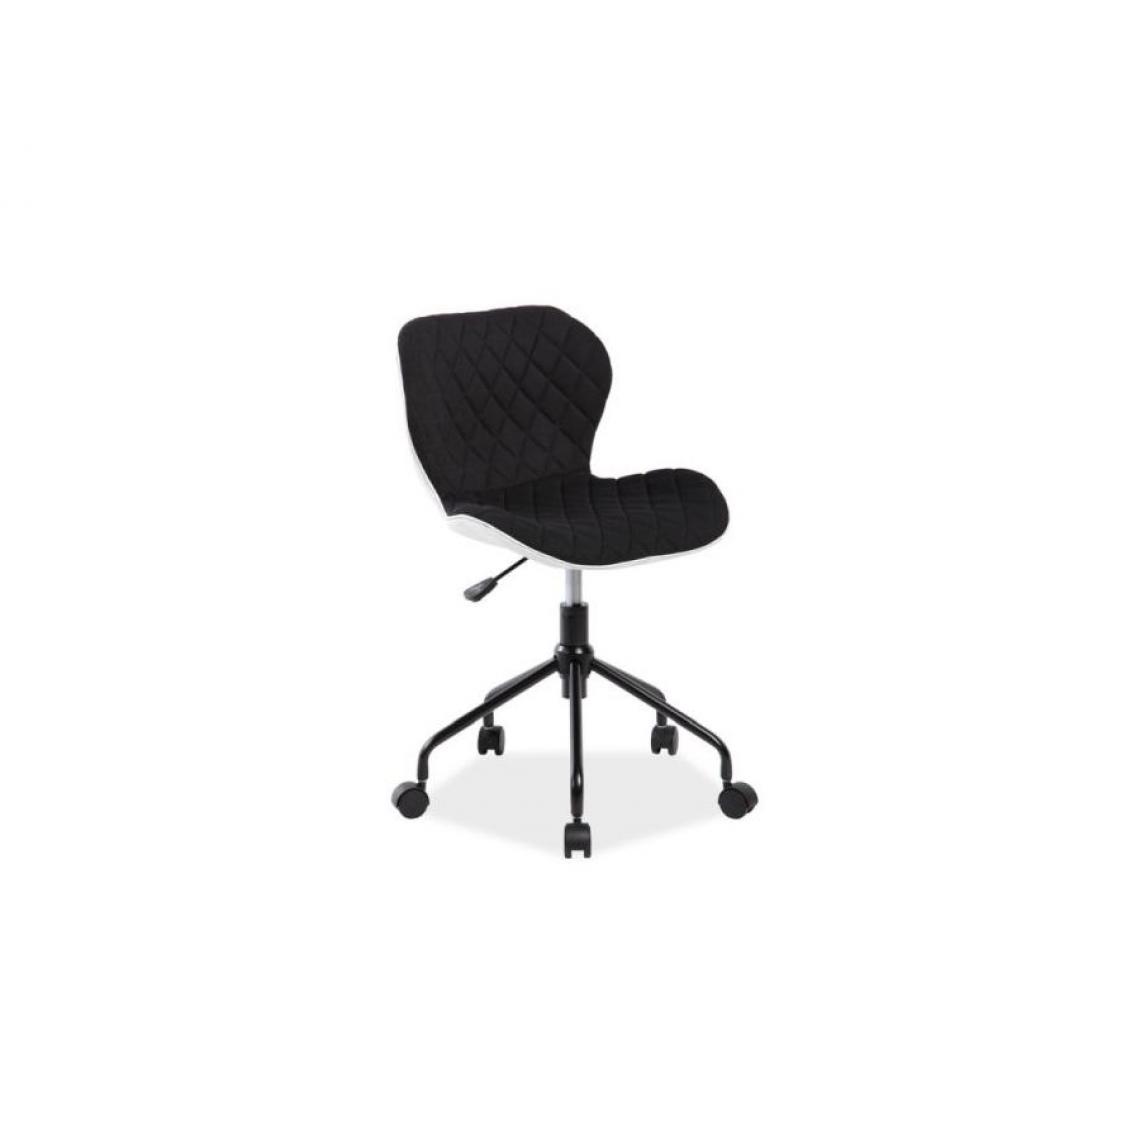 Hucoco - RIZO | Chaise pivotante pour enfants fille/garçon | Hauteur 77-85 cm | Tissu haute qualité | Chaise de bureau à roulettes - Noir - Chaises